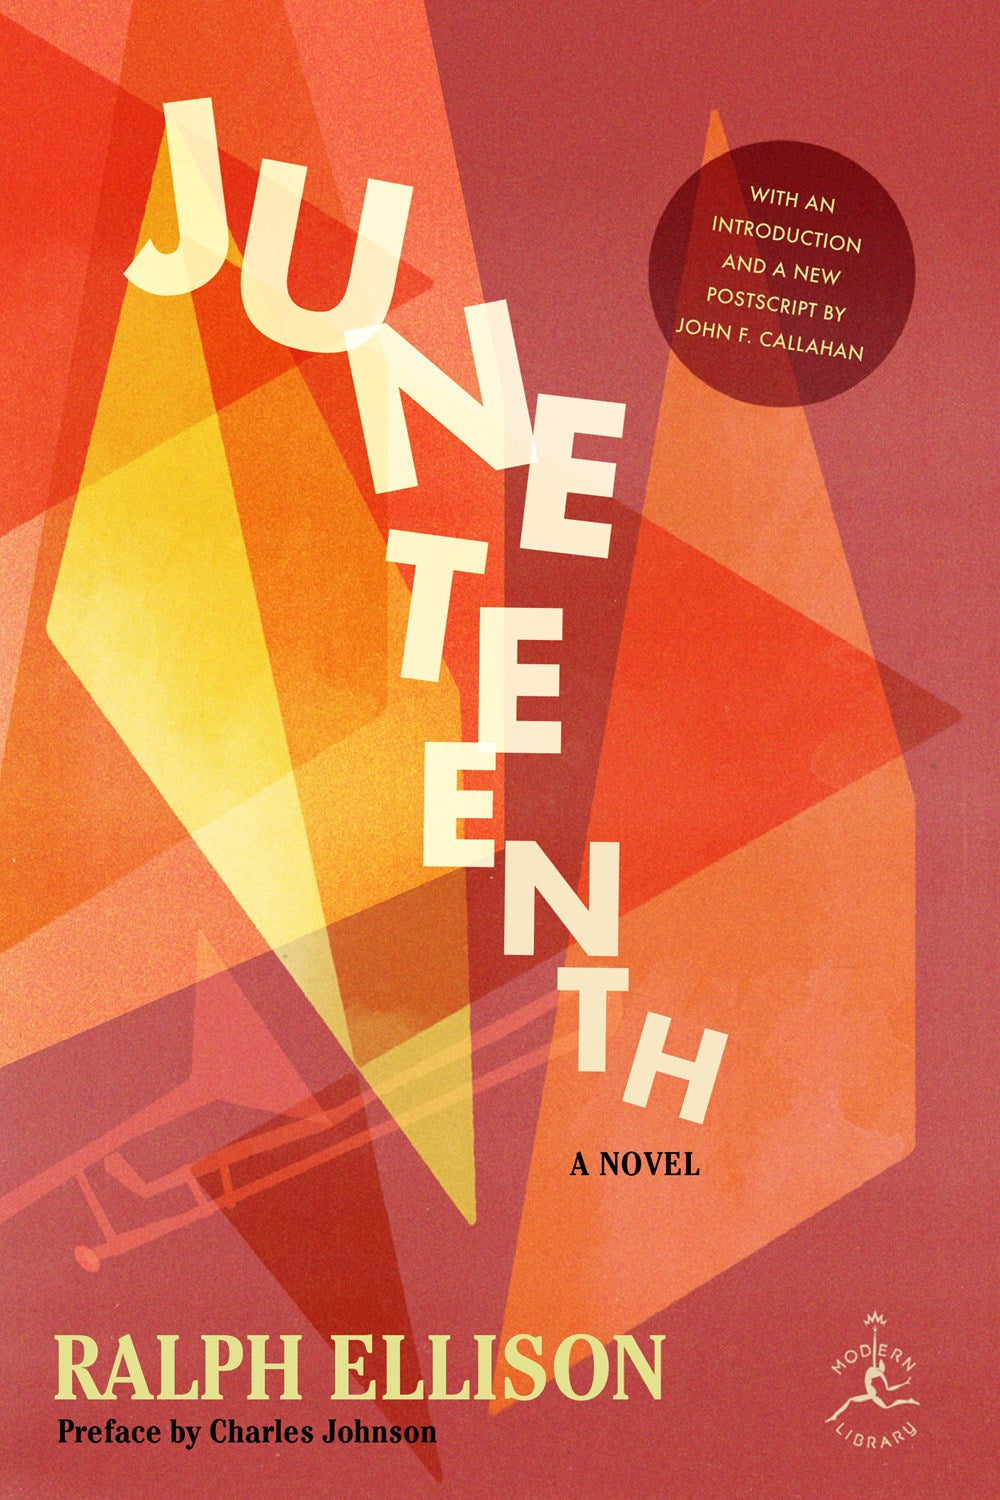 Juneteenth: A Novel